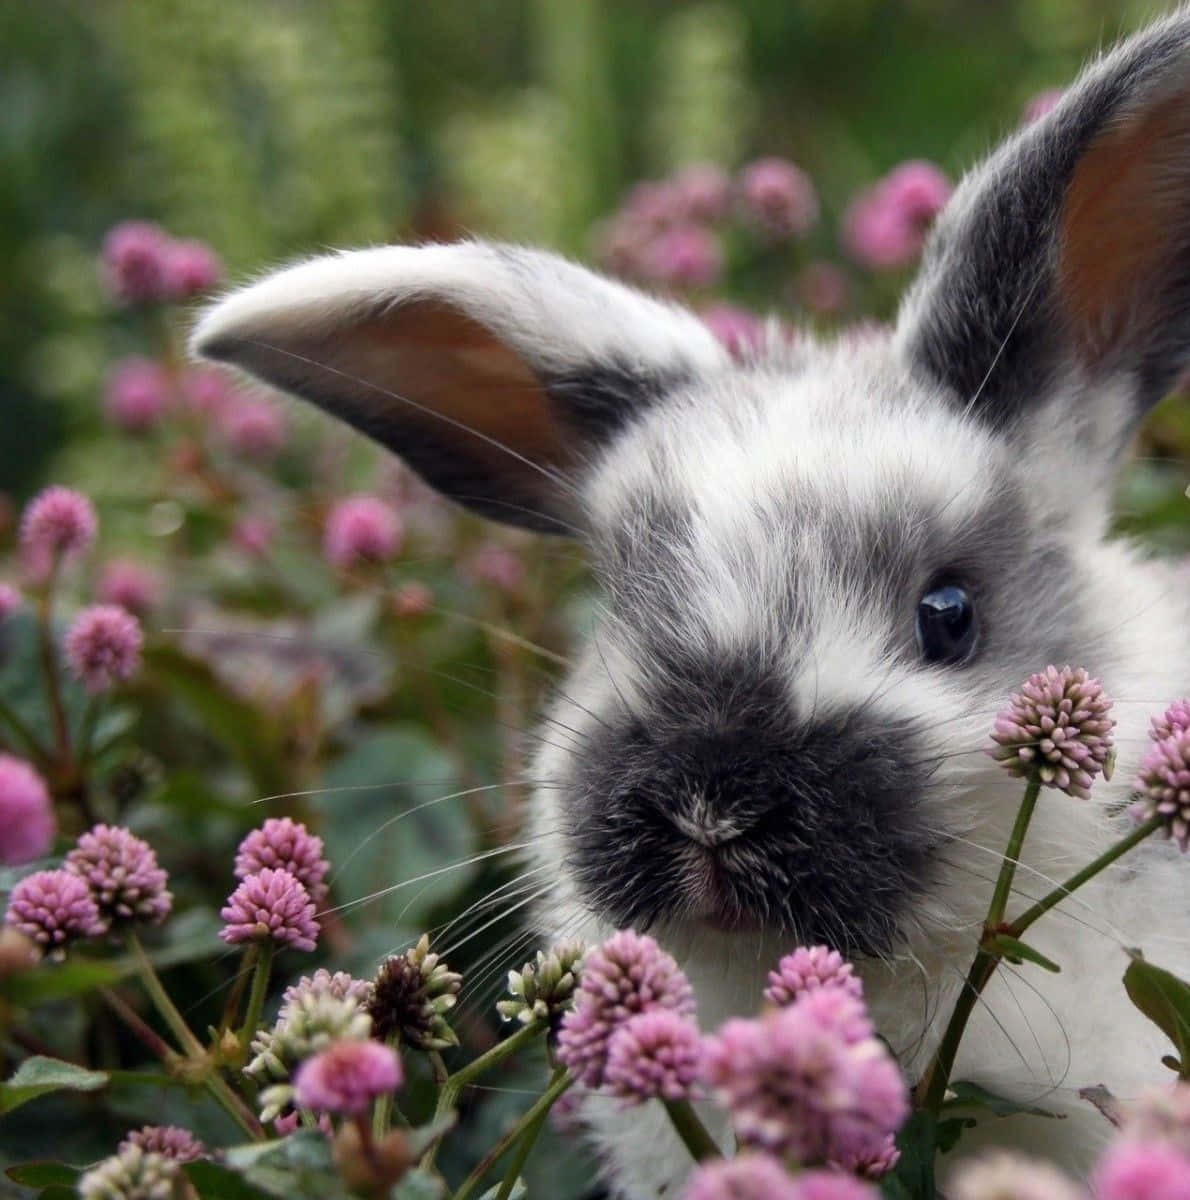 Einniedliches Weißes Kaninchen Mit Einer Rosafarbenen Nase, Das In Die Kamera Schaut.